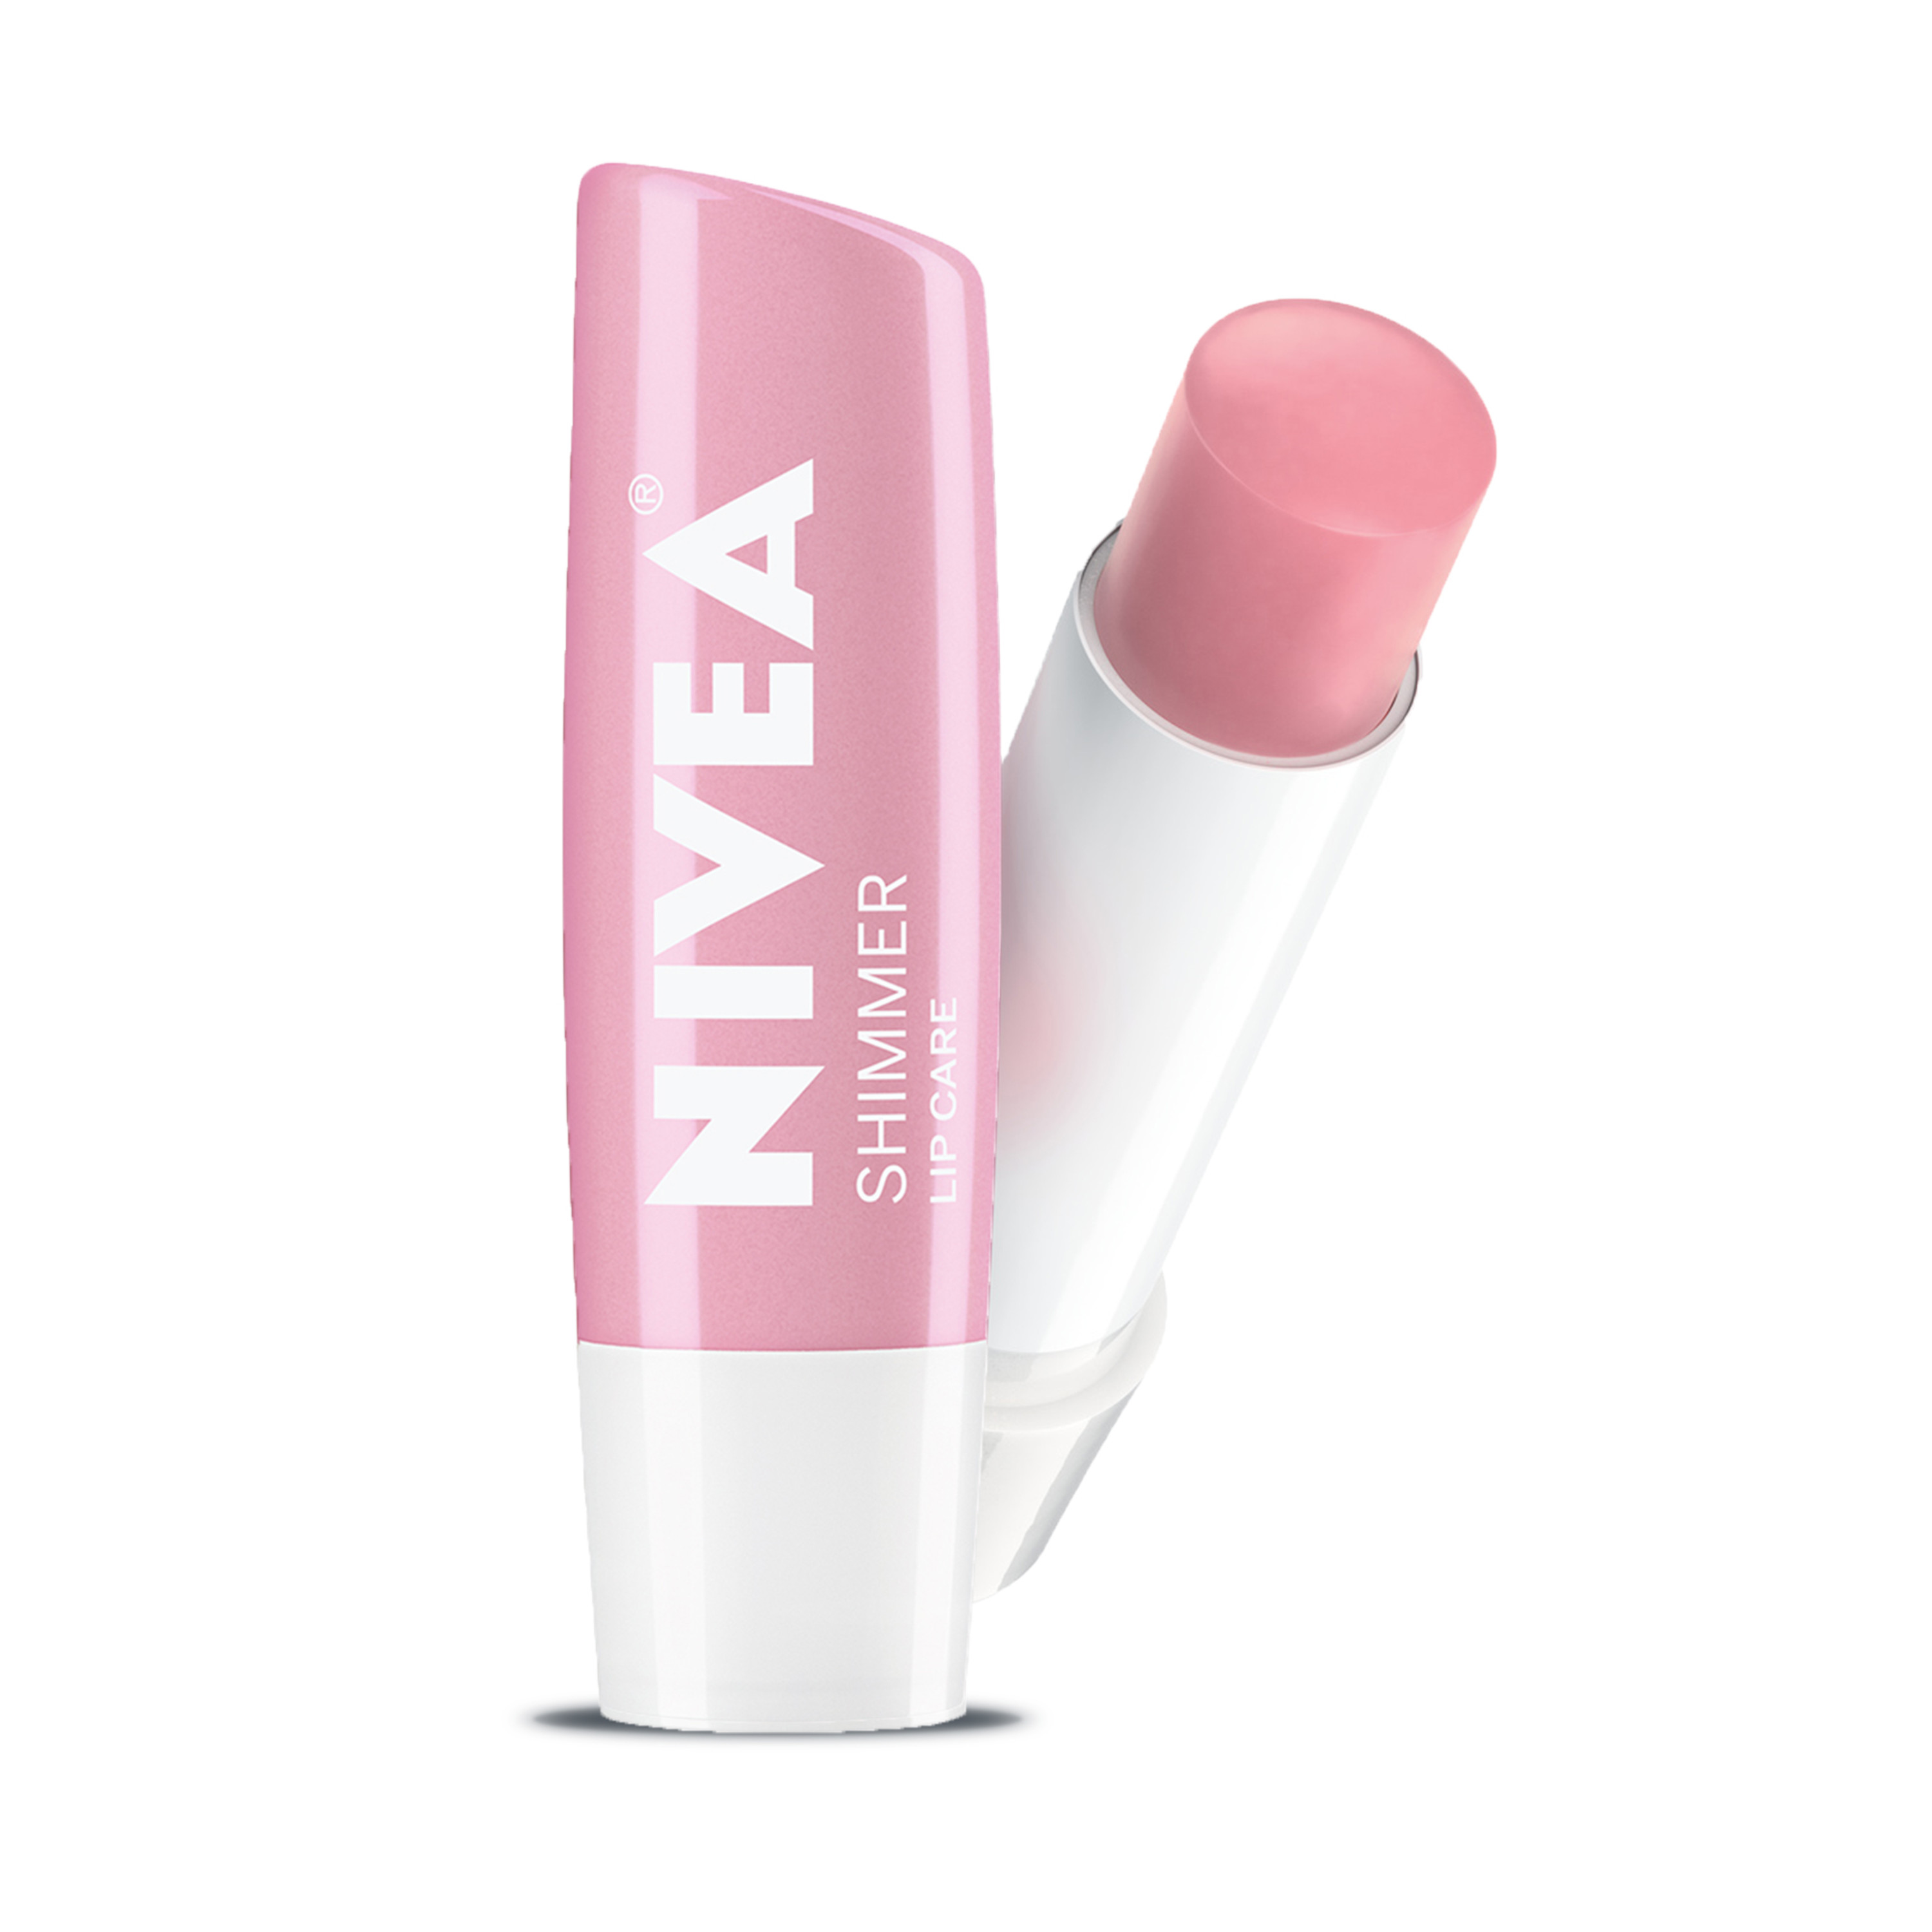 NIVEA Shimmer Lip Care 0.17 oz. Carded Pack - image 2 of 4